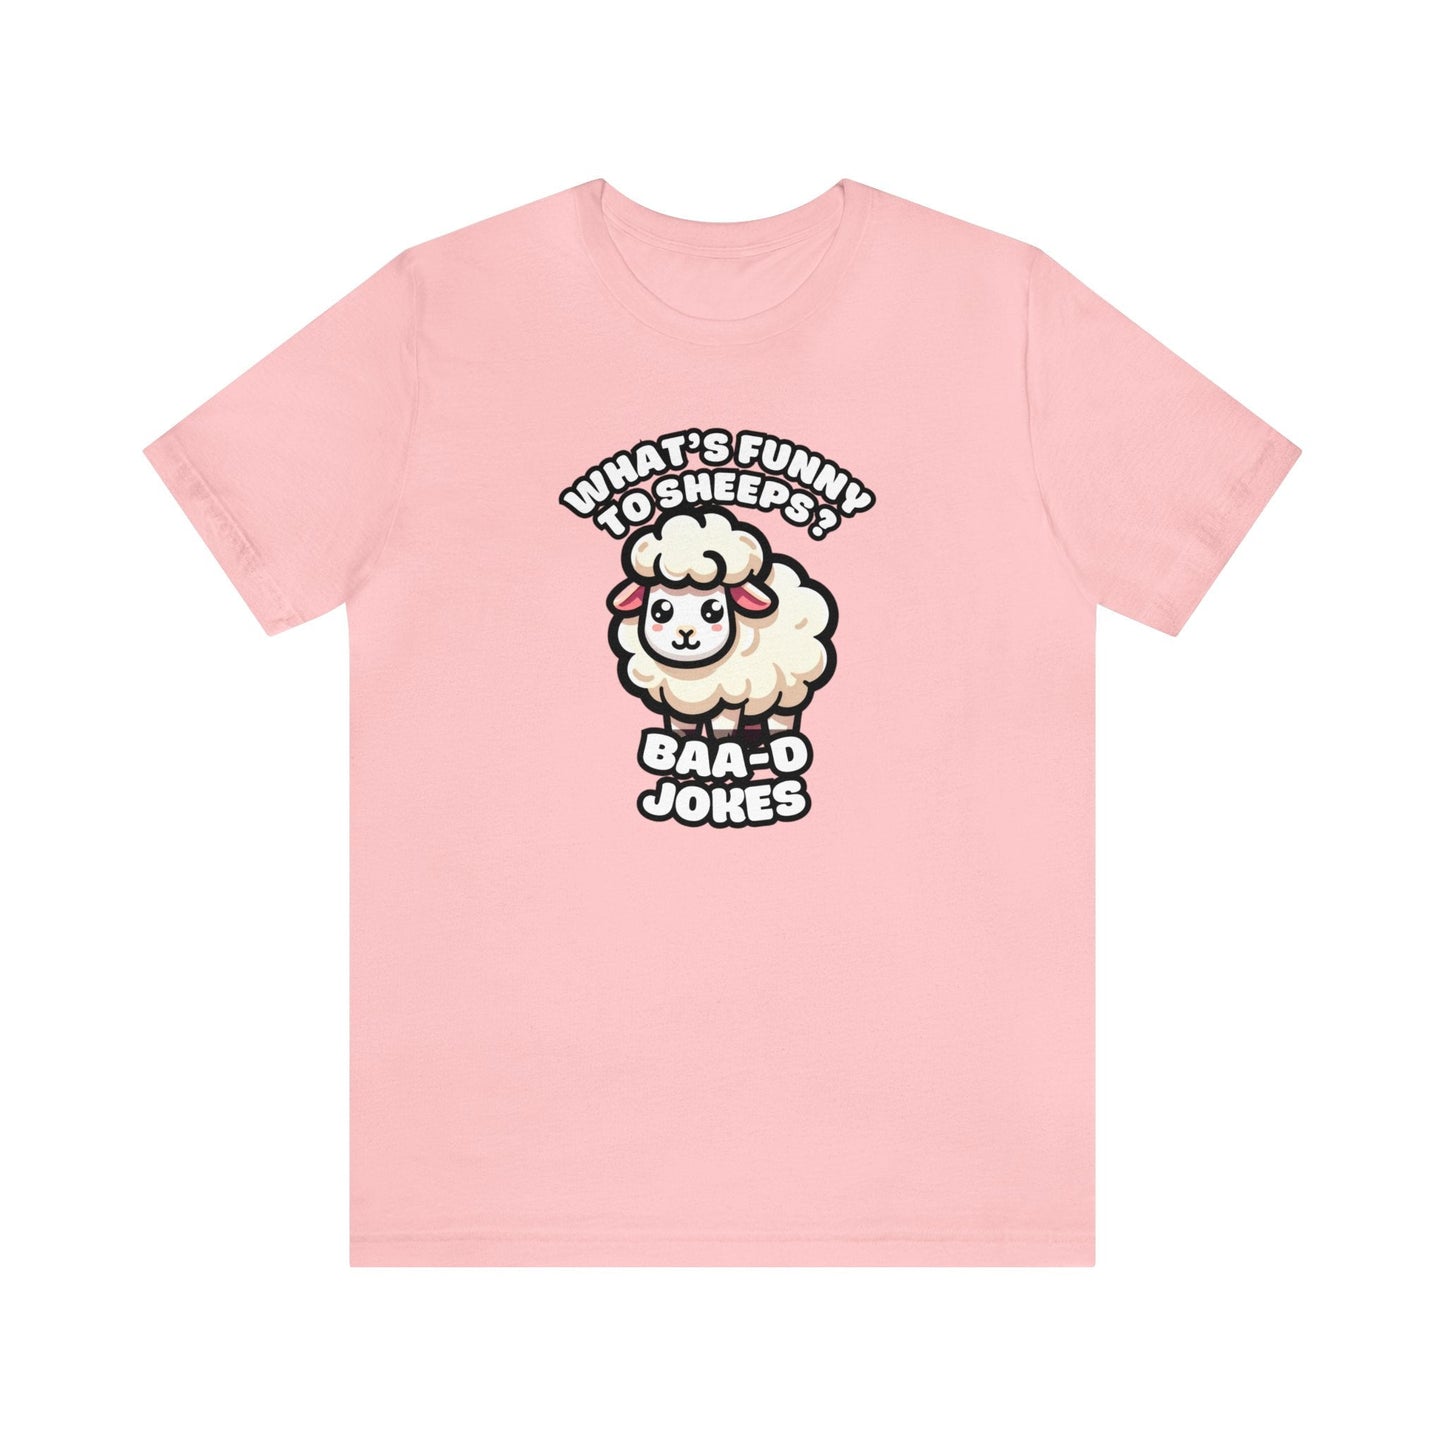 Baa-d Jokes - Sheep T-shirt Pink / S